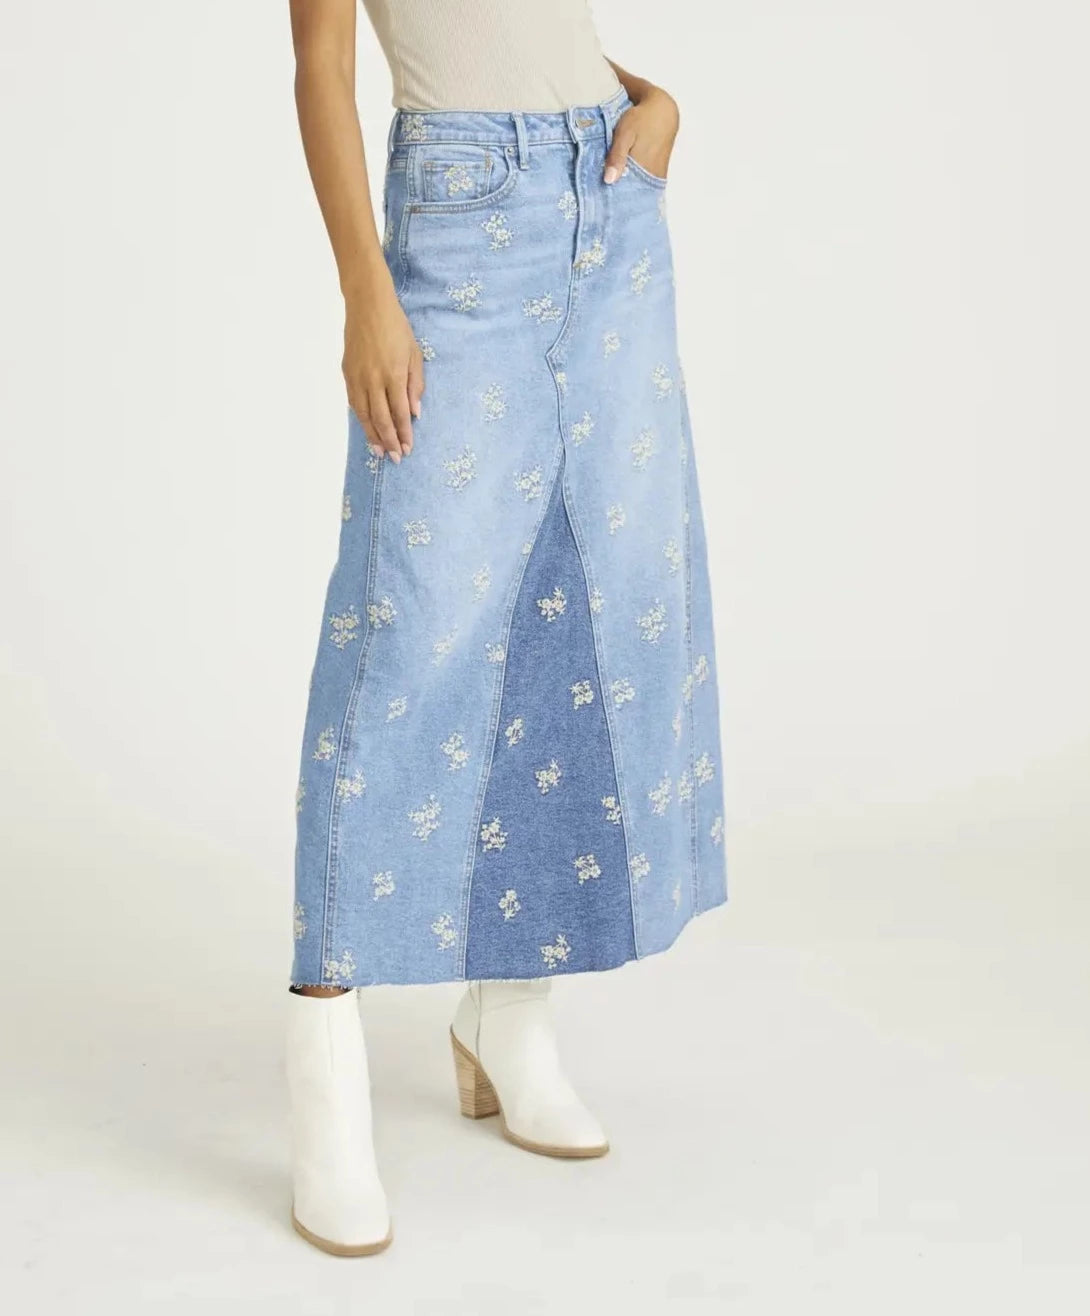 Light Wash Denim Skirt - Sequin Denim Skirt - Denim Mini Skirt - Lulus